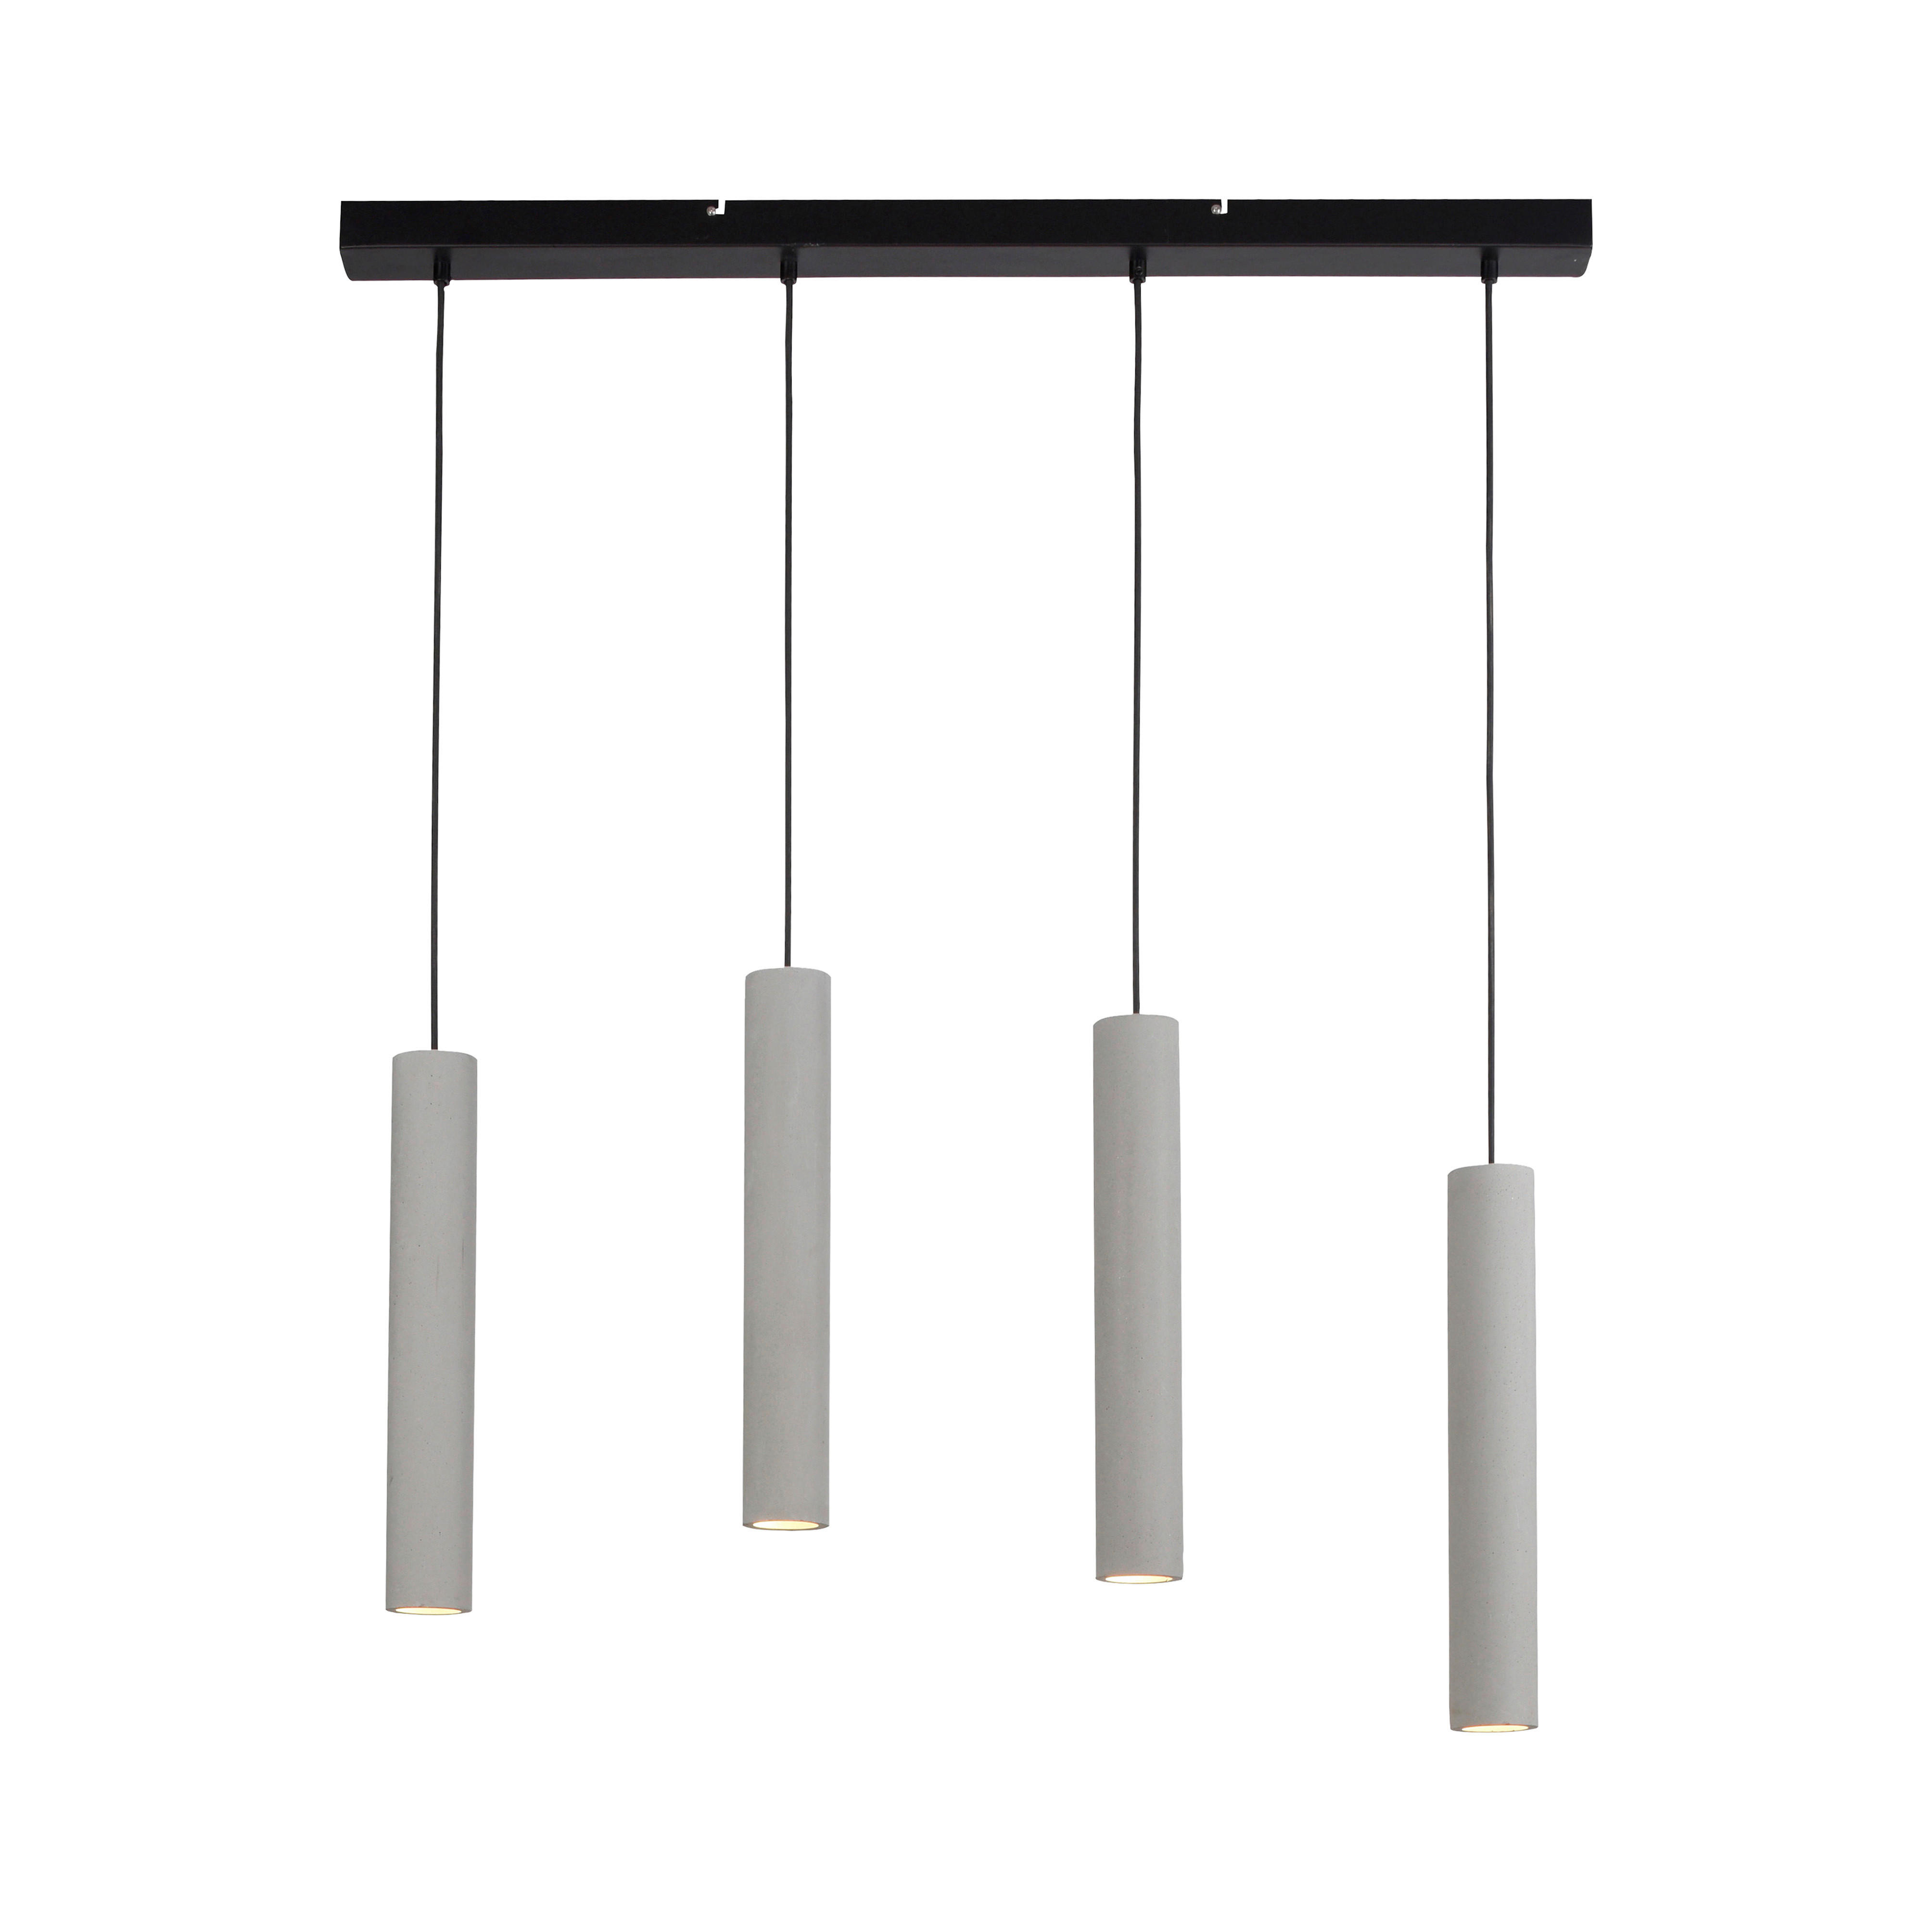 HÄNGELEUCHTE Eton 100/7,5/120 cm   - Greige, Design, Kunststoff/Metall (100/7,5/120cm) - Paul Neuhaus